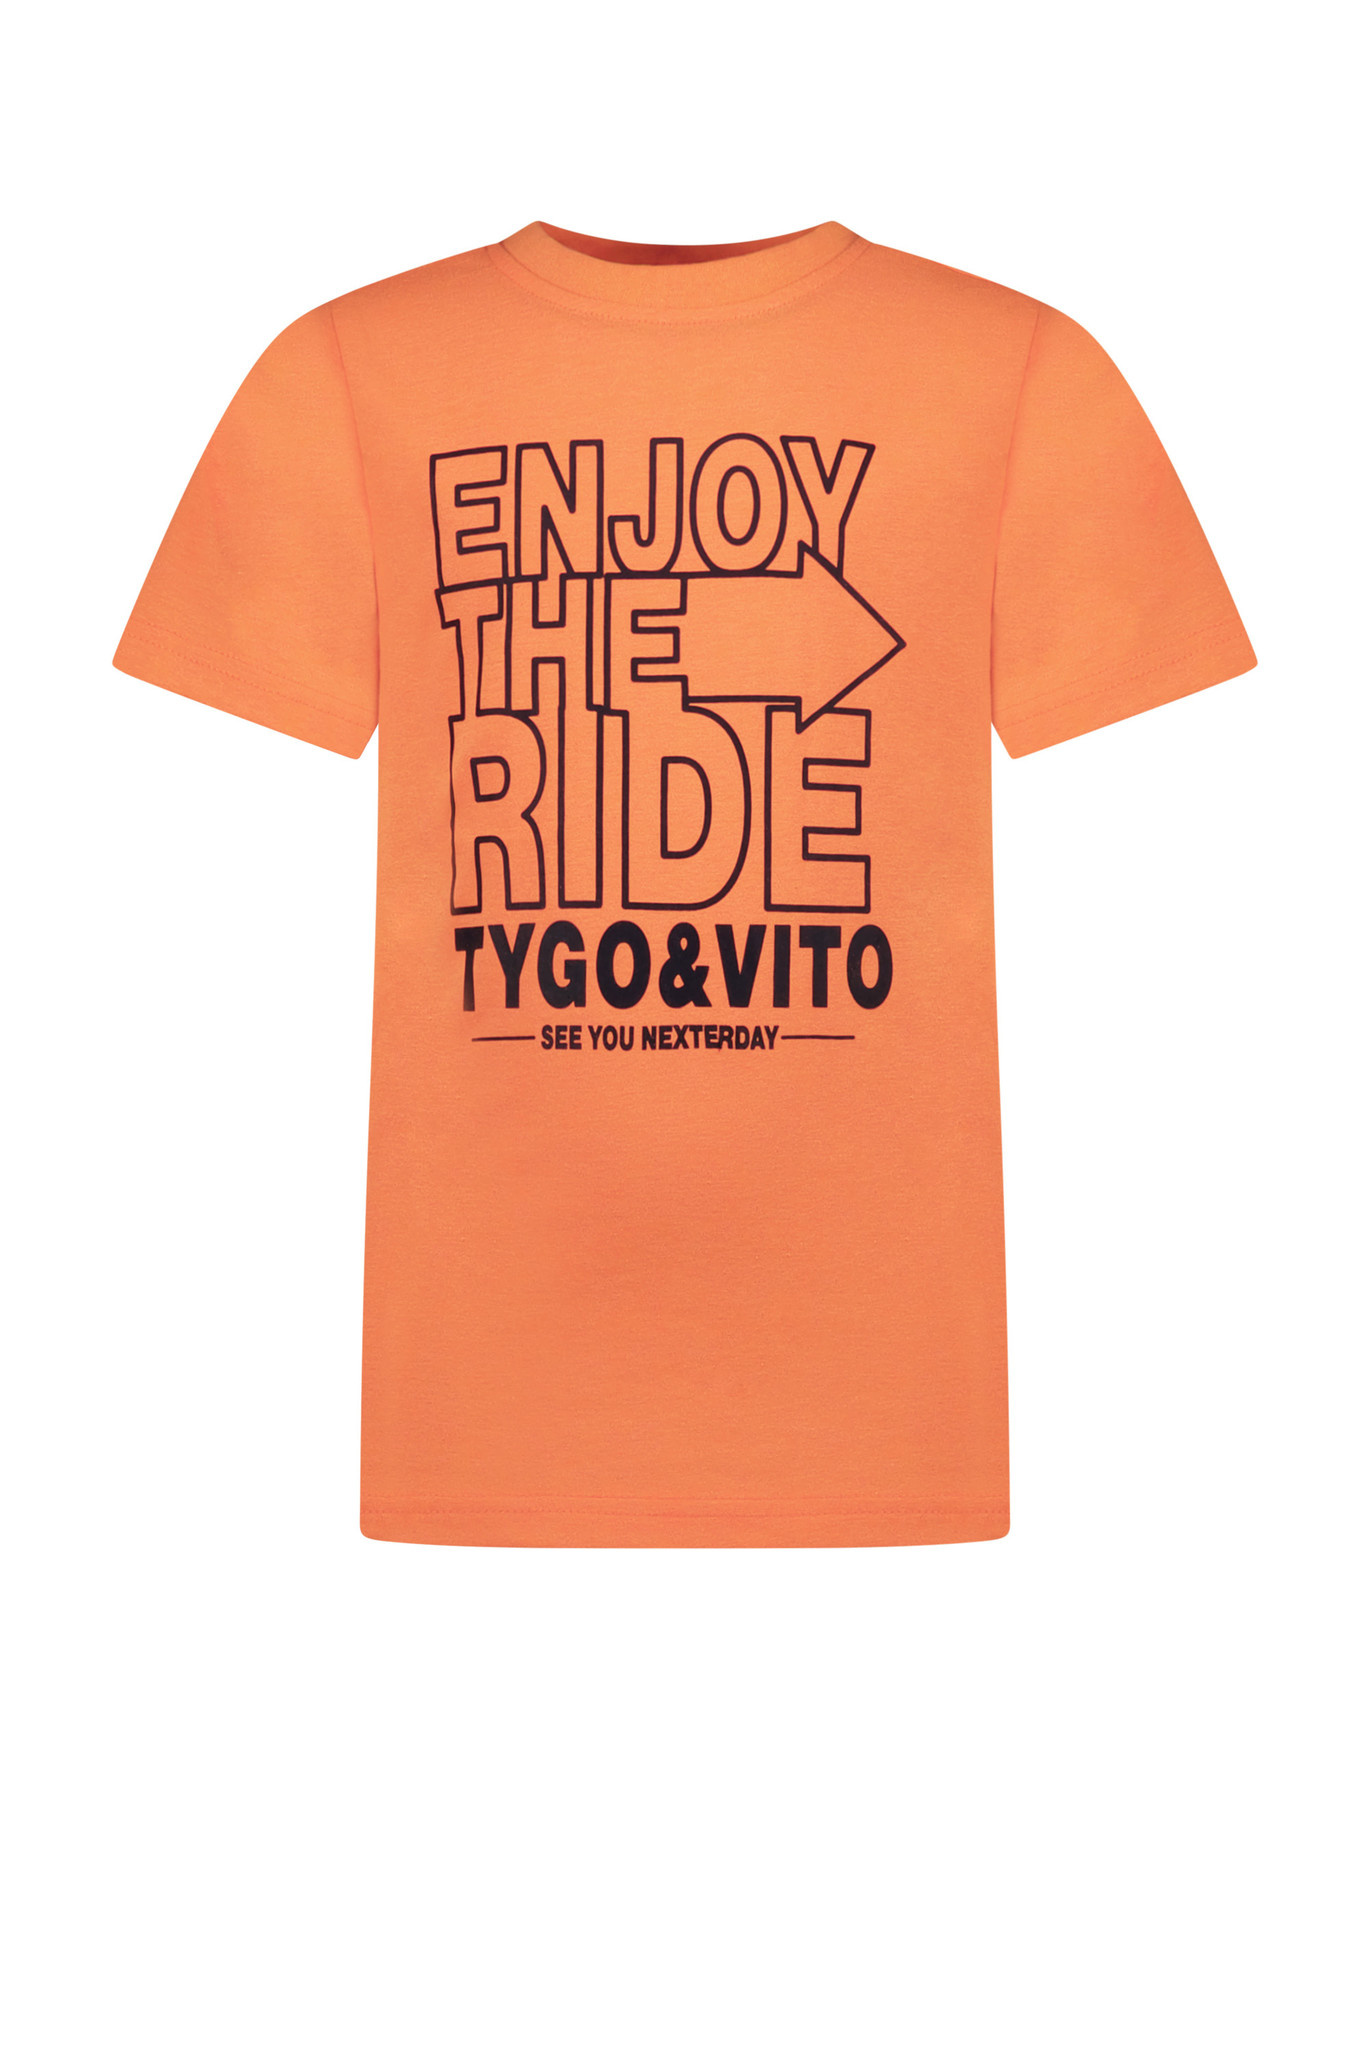 TYGO & vito X302-6427 Jongens T-shirt - Maat 110/116